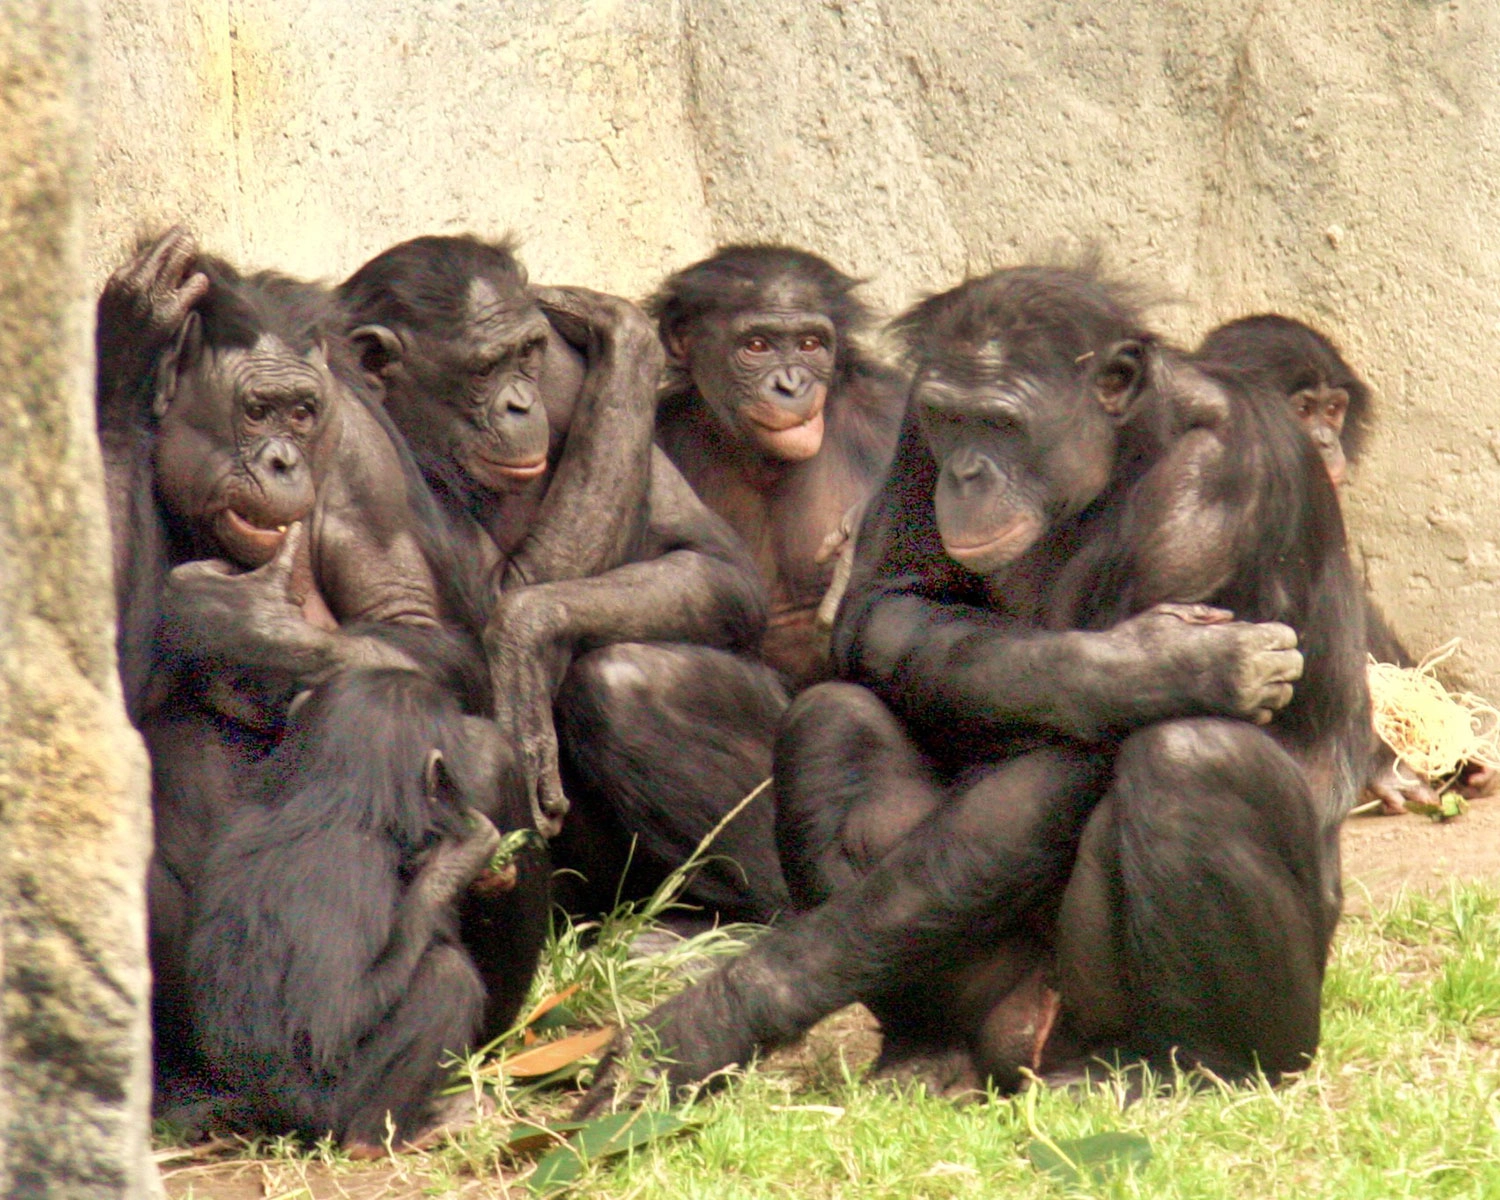 A group of bonobo monkeys.